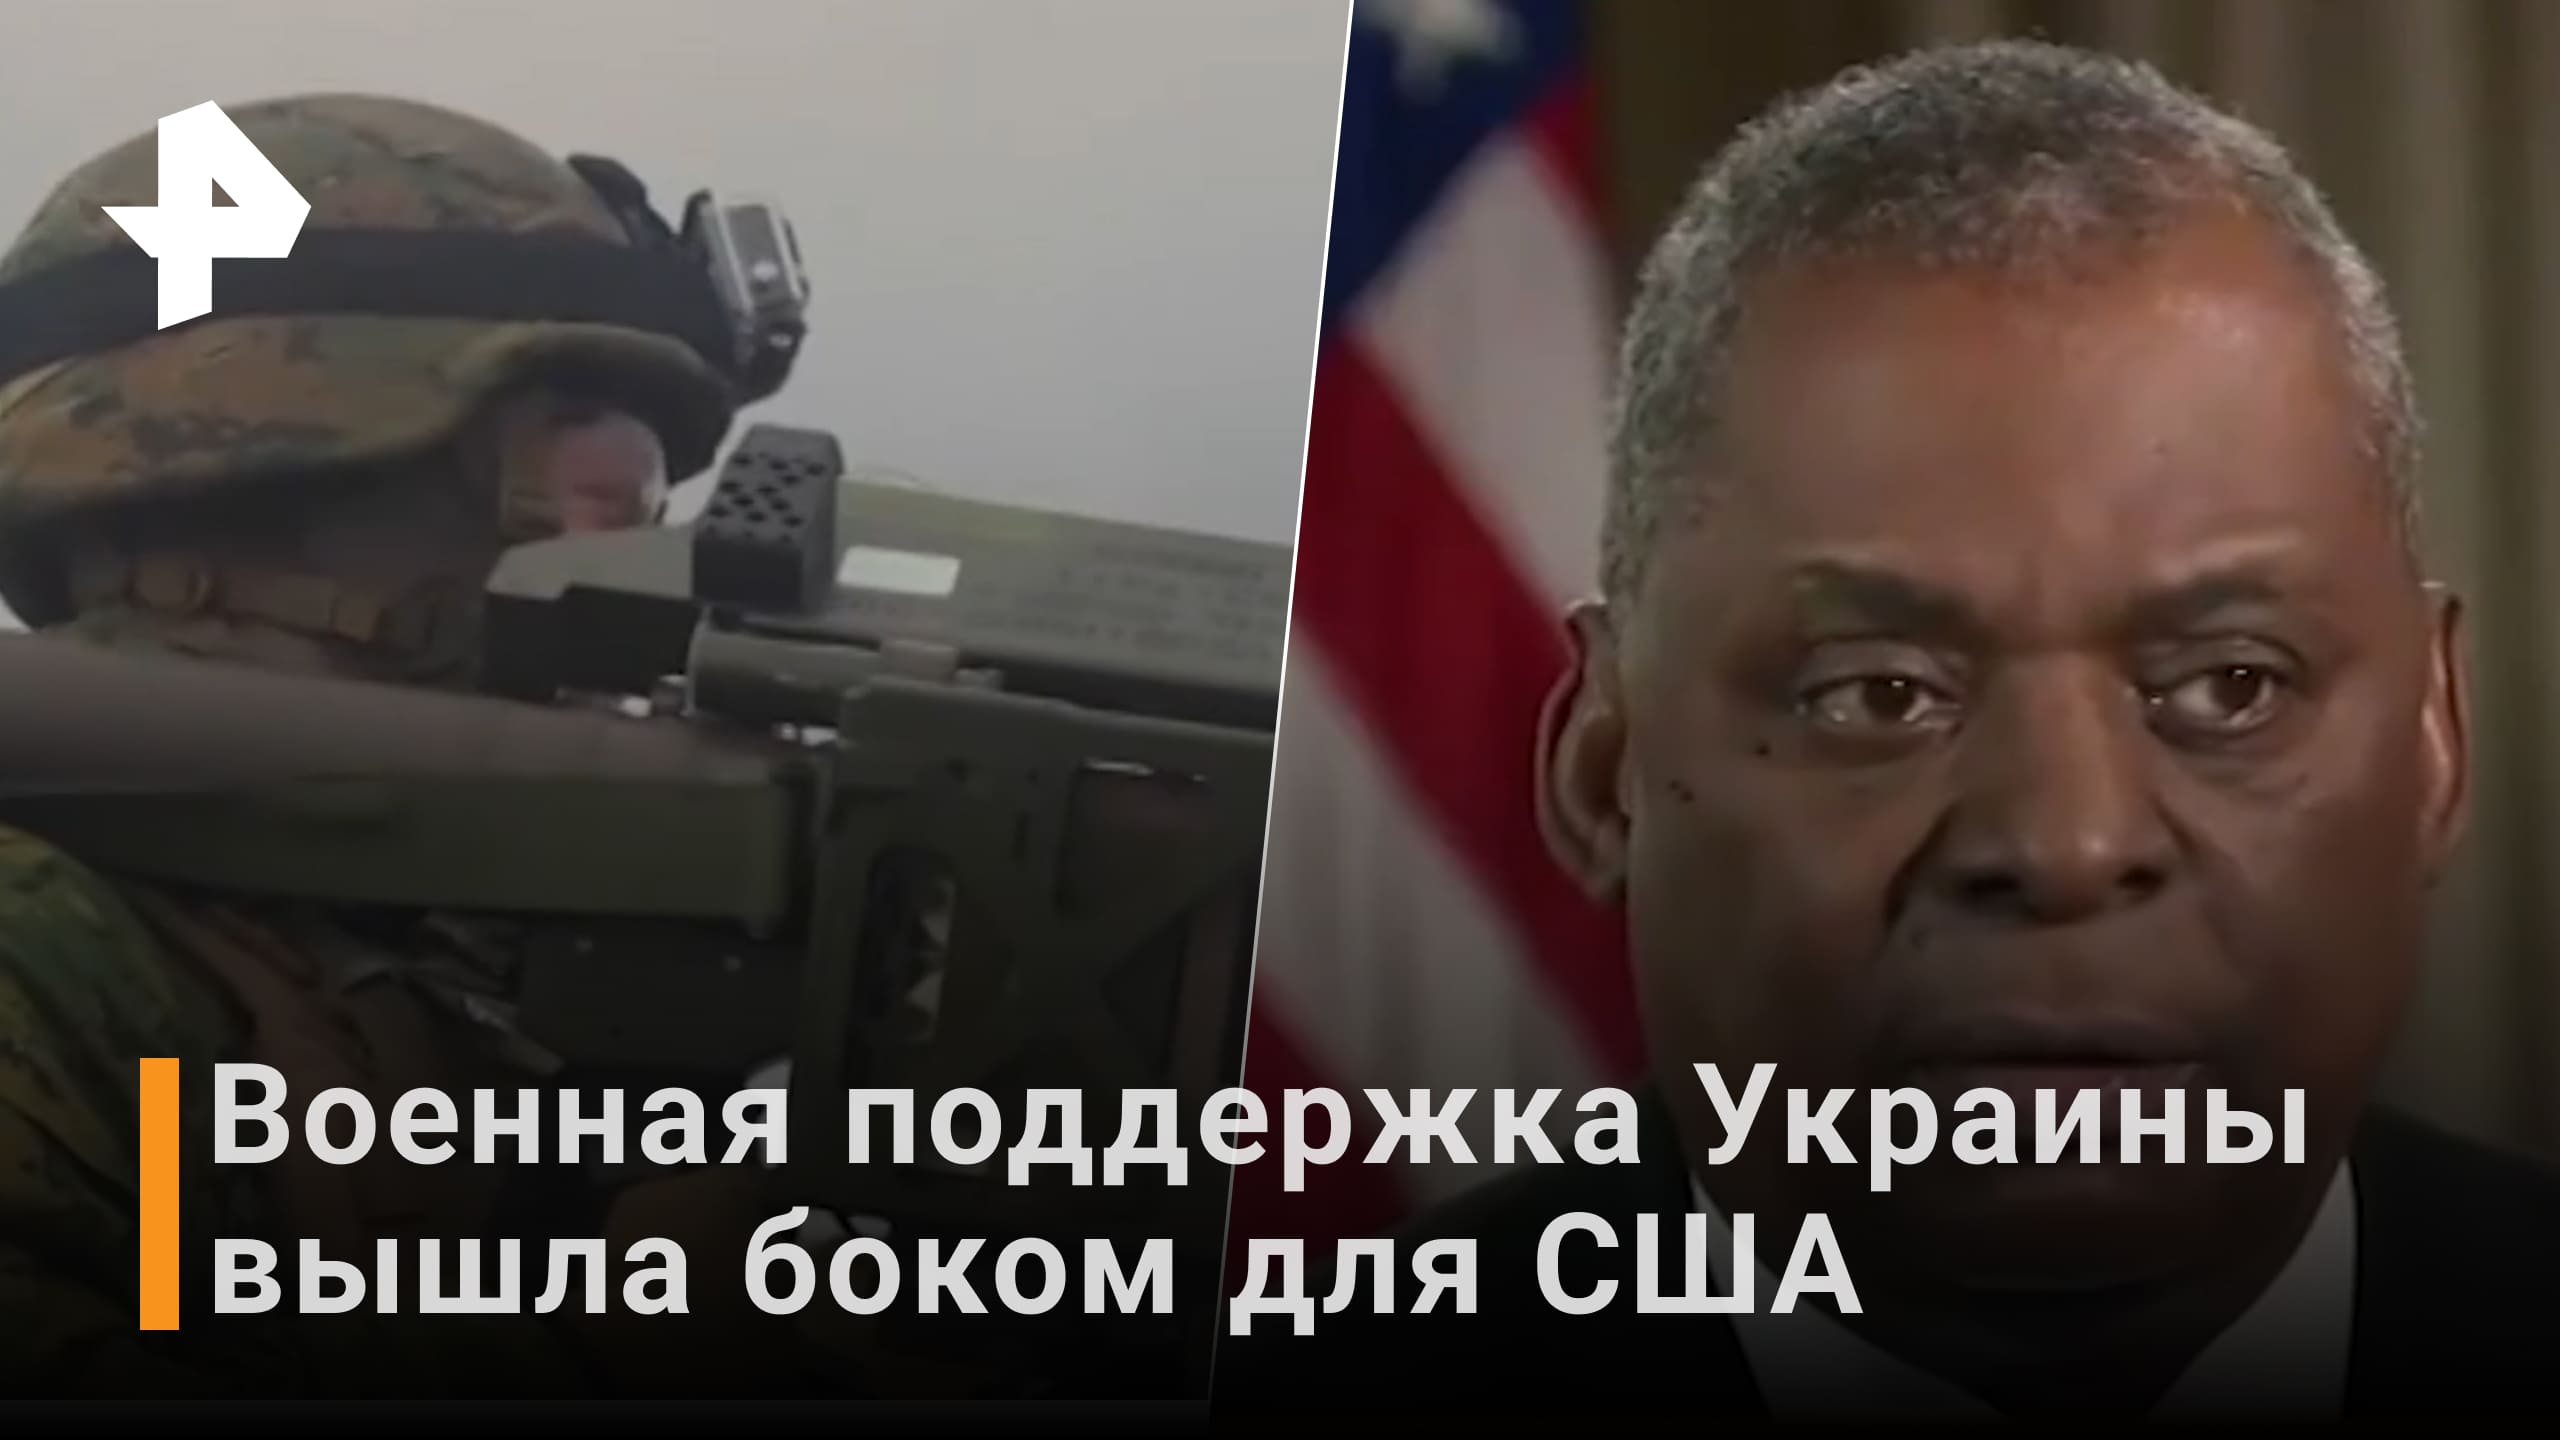 Глава Пентагона заявил о необходимости поставки тяжелых вооружений для Украины / Новости РЕН